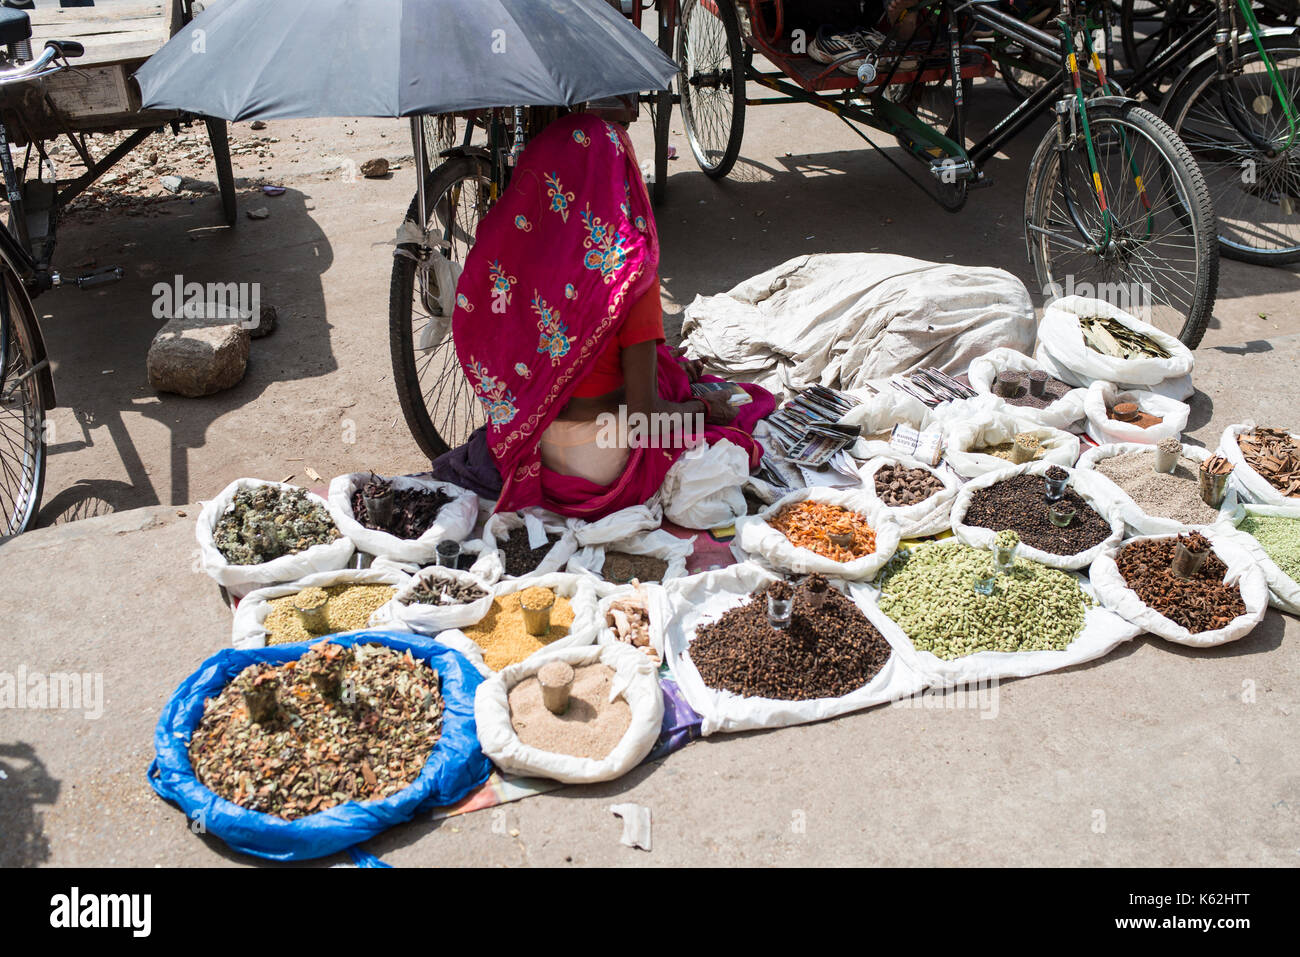 Indian spice vendor, Delhi Stock Photo